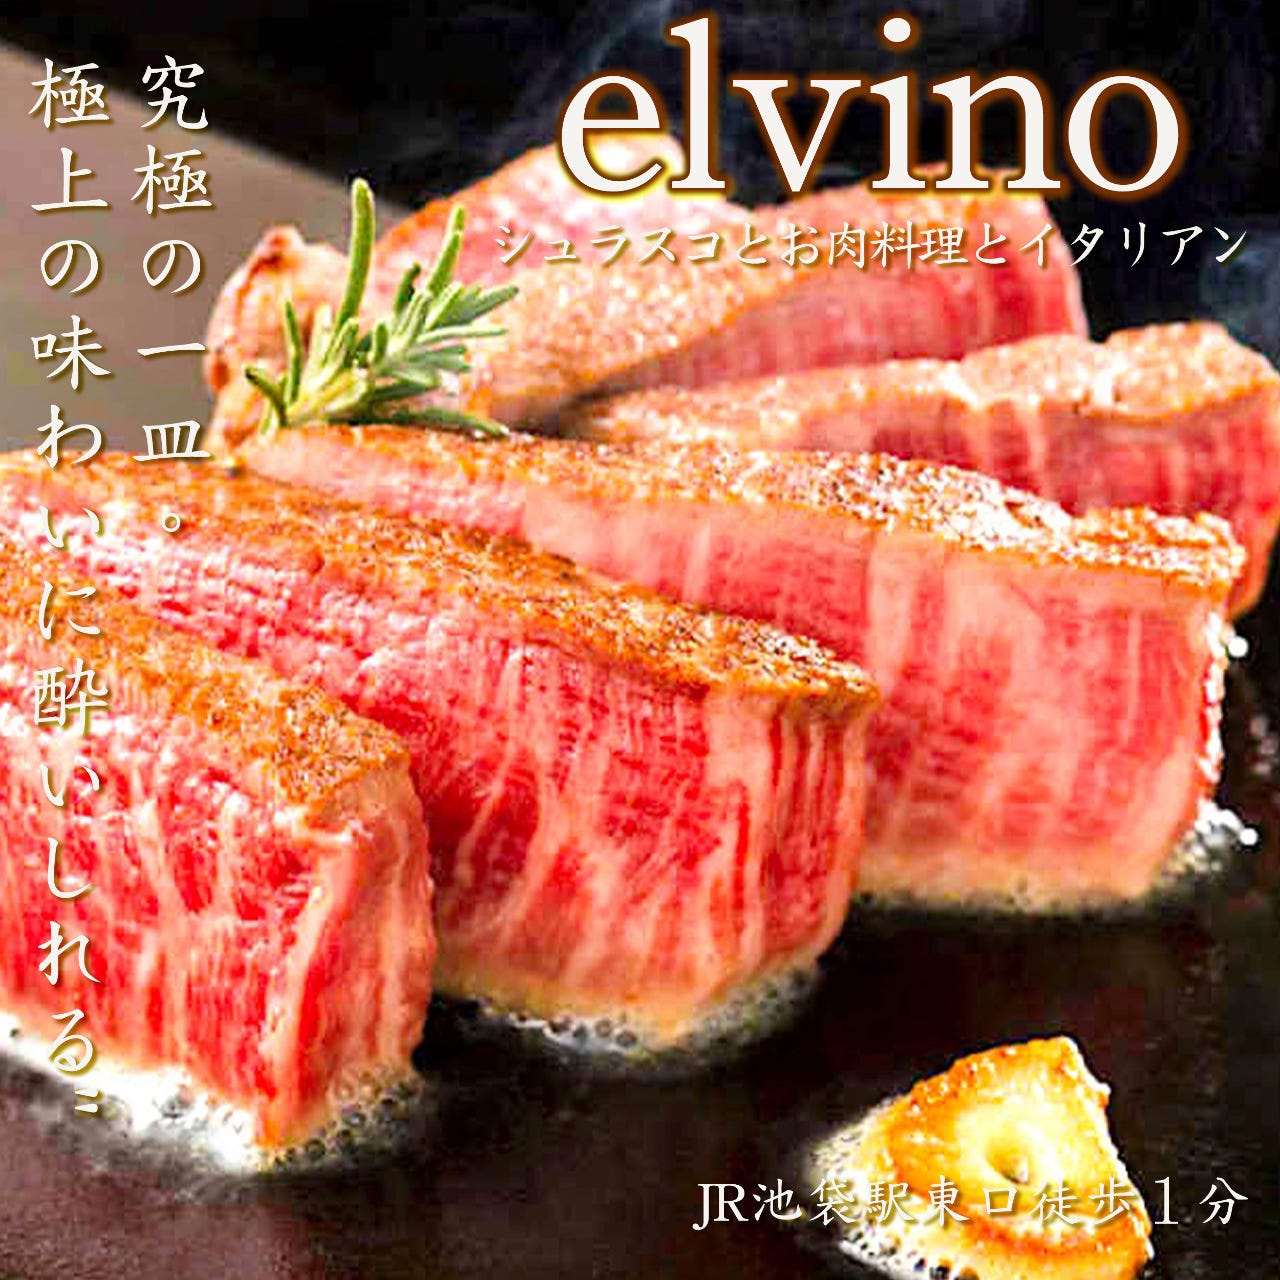 肉寿司&シュラスコ食べ放題 エルビーノ 池袋店